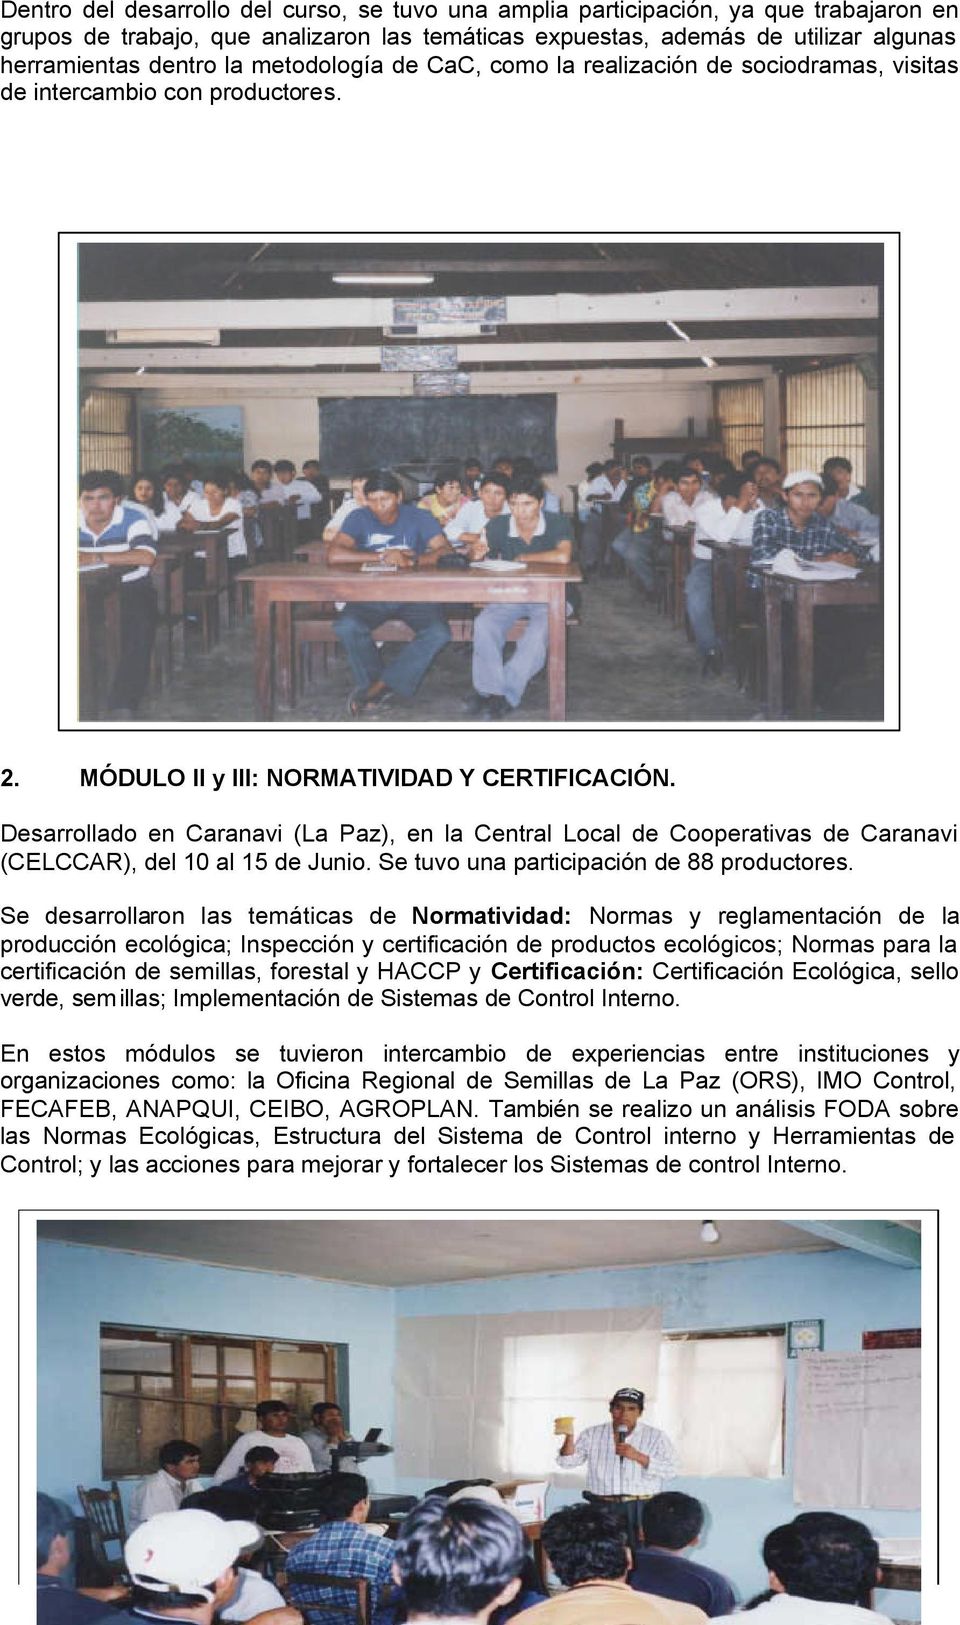 Desarrollado en Caranavi (La Paz), en la Central Local de Cooperativas de Caranavi (CELCCAR), del 10 al 15 de Junio. Se tuvo una participación de 88 productores.